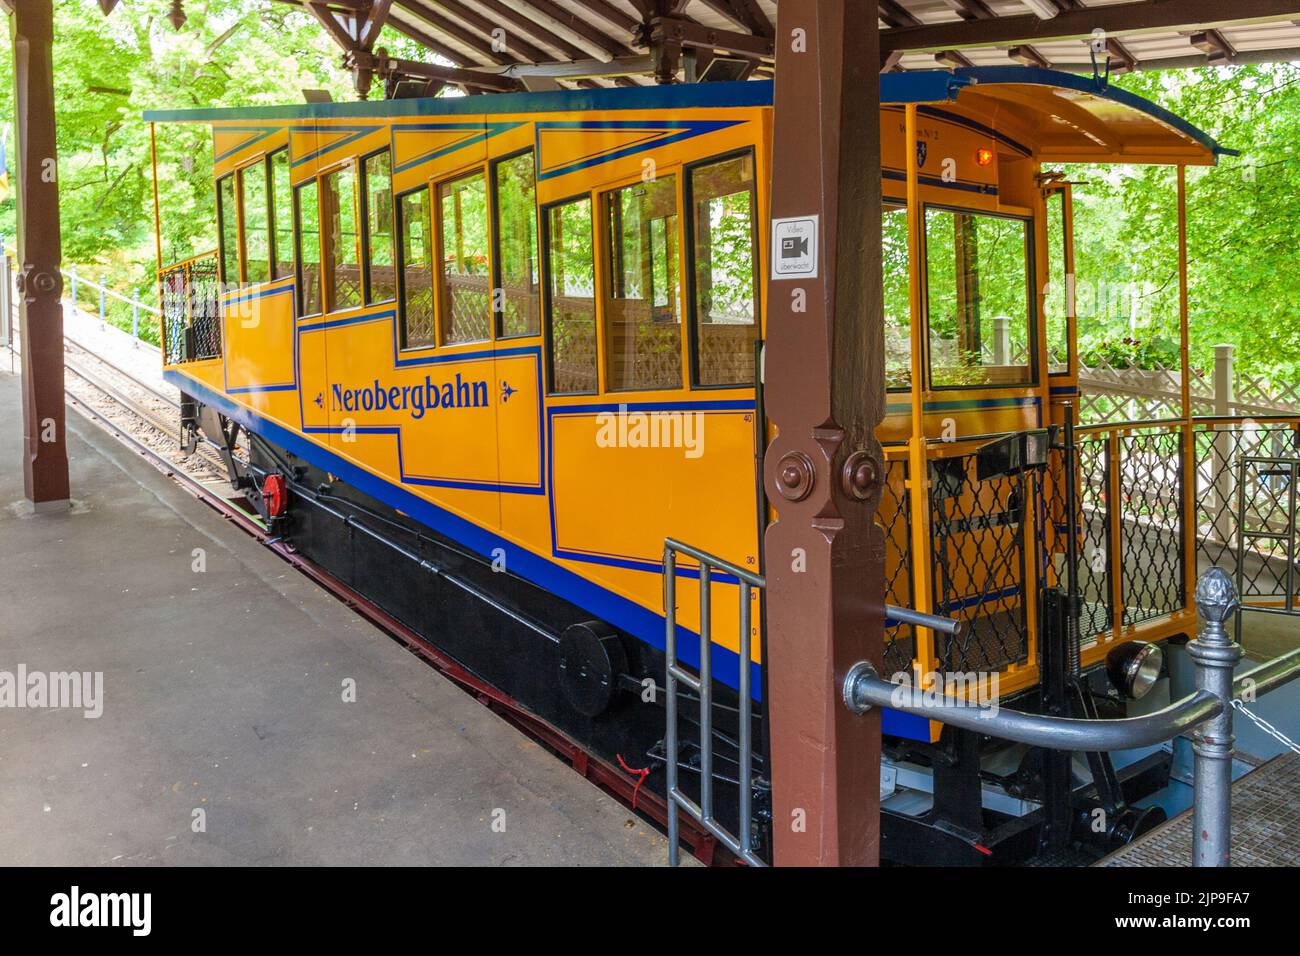 Grande vista ravvicinata di una carrozza della funicolare di Nerobergbahn con il suo caratteristico colore giallo nella stazione inferiore di Wiesbaden, Germania. Il... Foto Stock